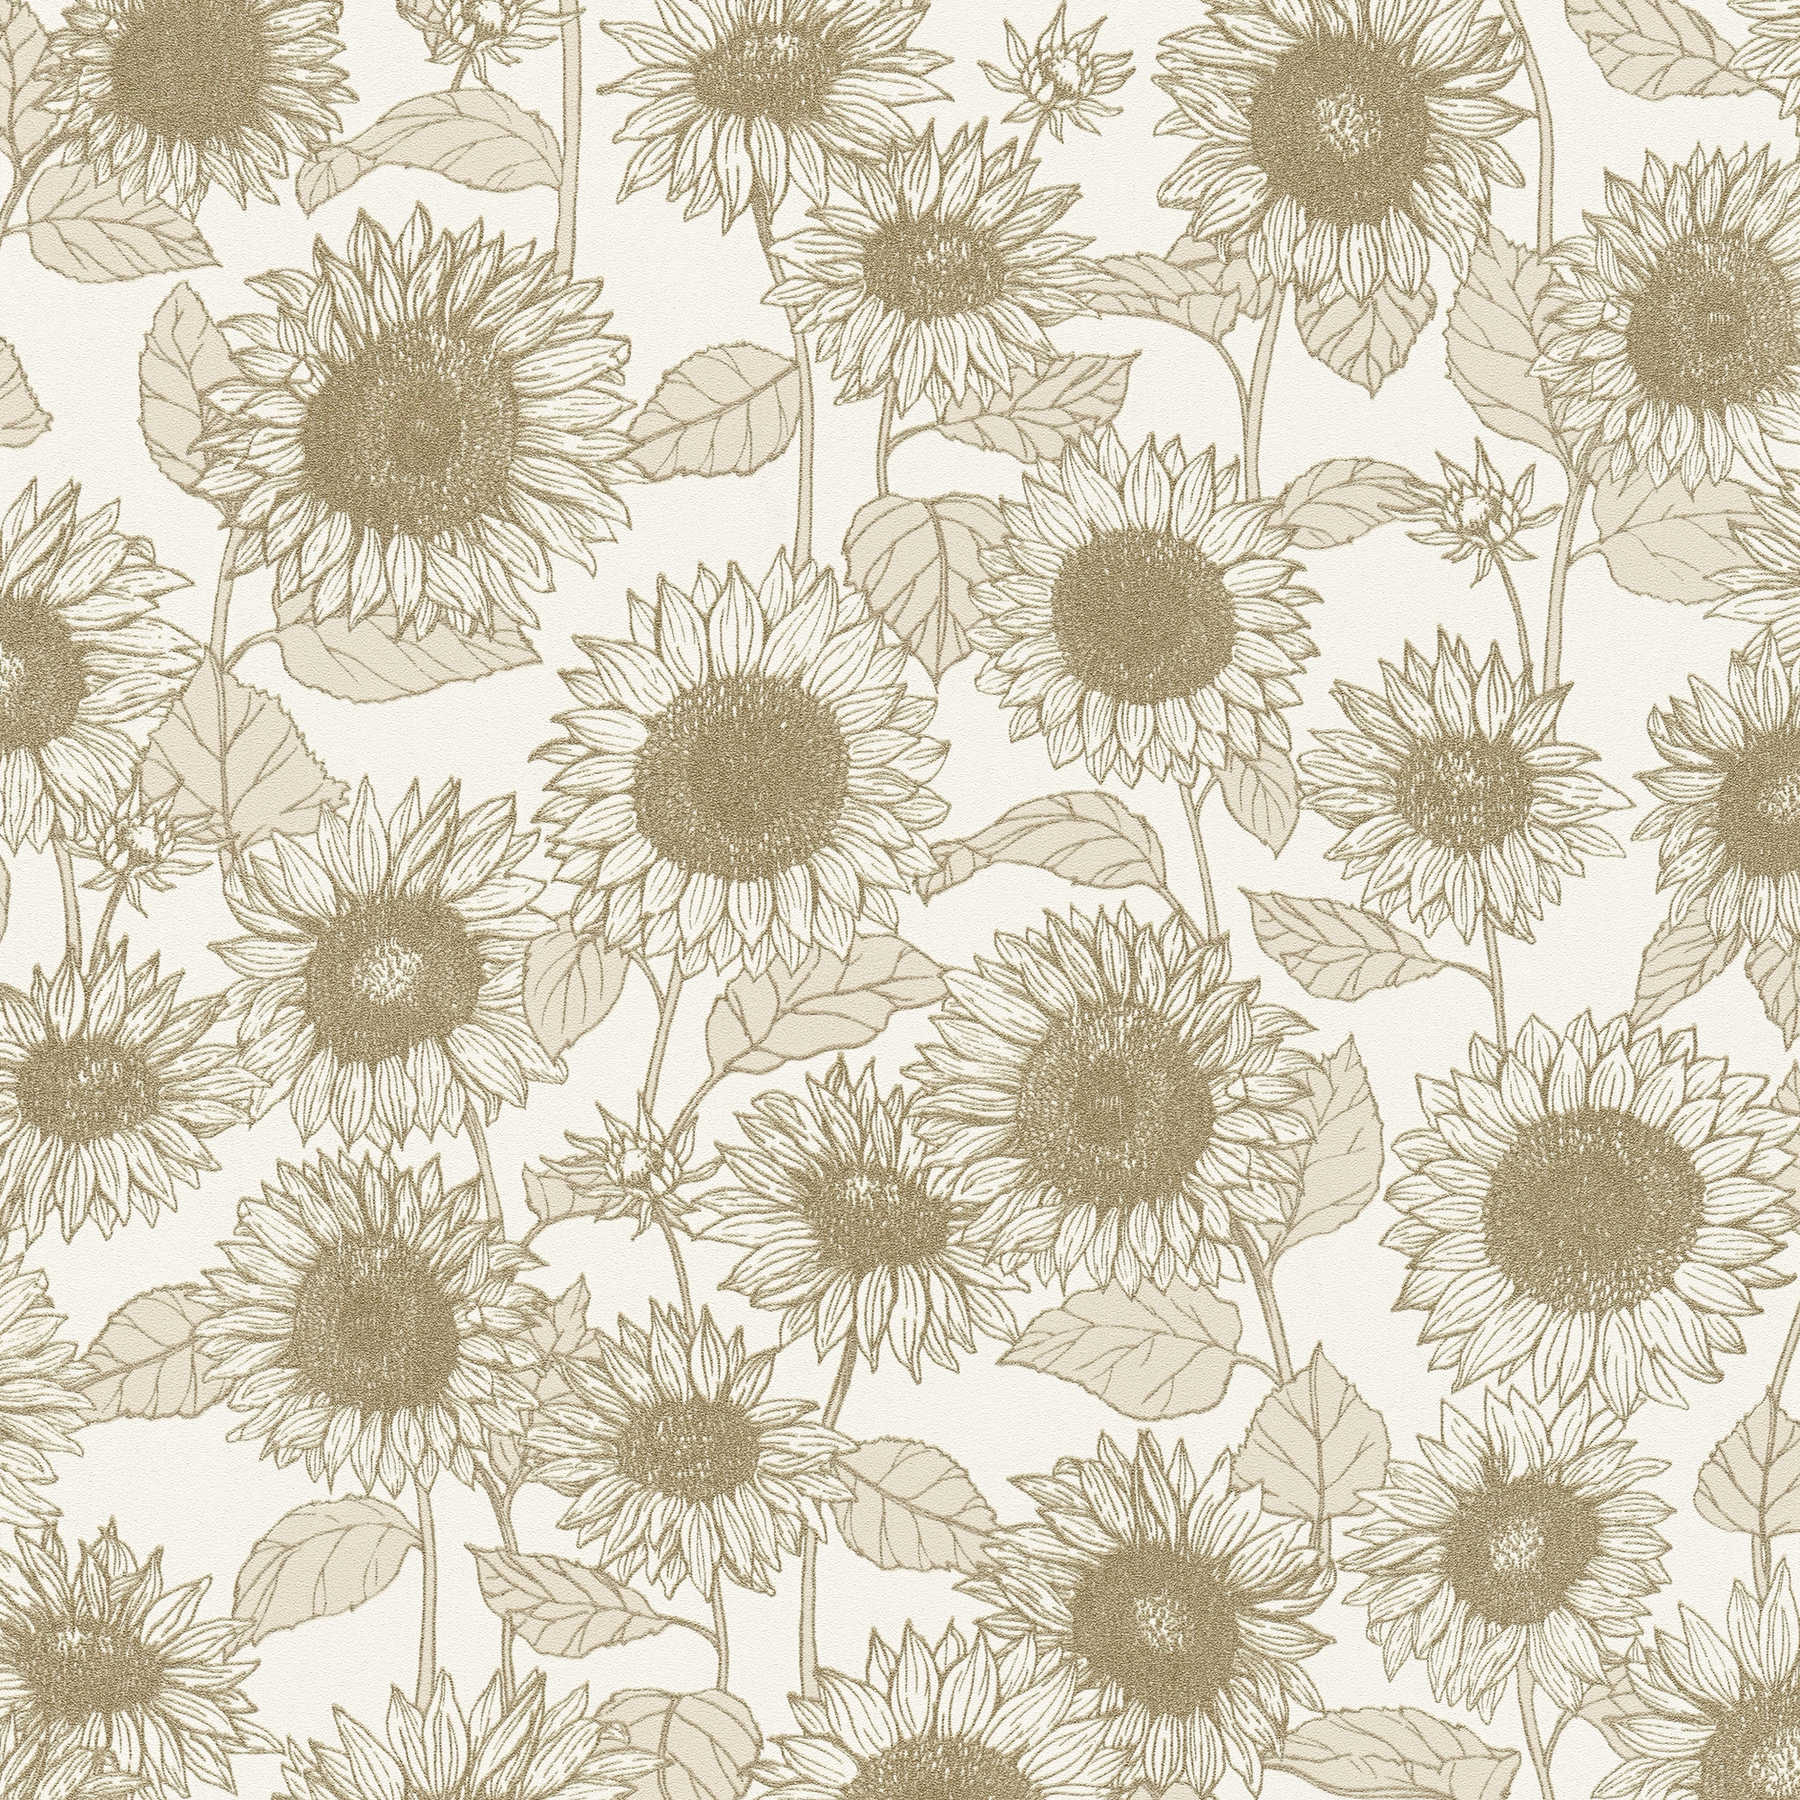 Tapete Sonnenblumen mit Metallic-Effekt – Beige, Weiß
